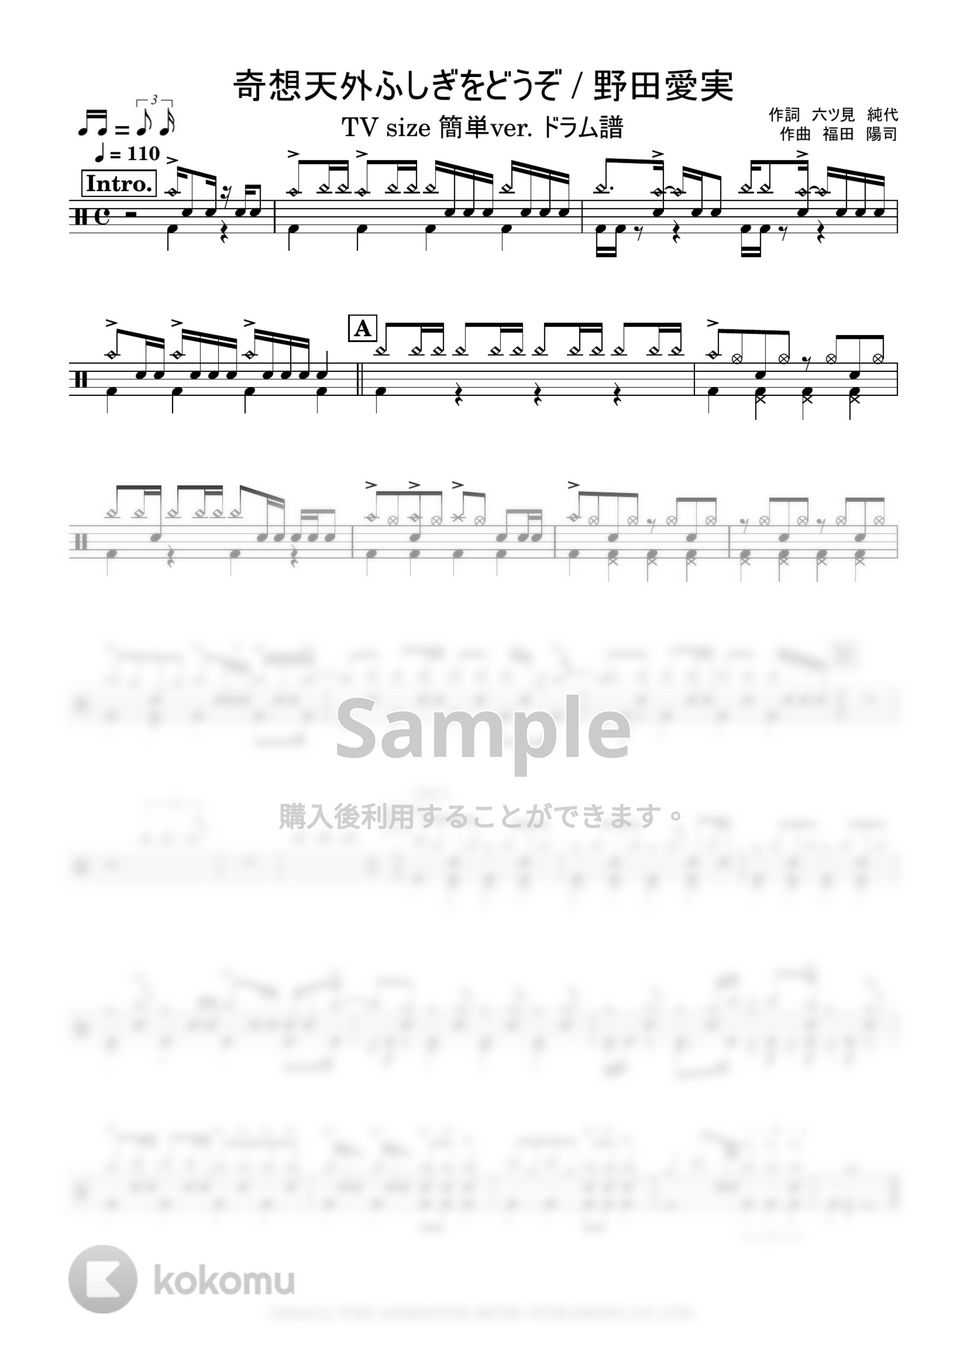 野田愛実 - 奇想天外ふしぎをどうぞ【TV size 簡単ver.】 (ドラム譜+MIDI) by 鈴木建作